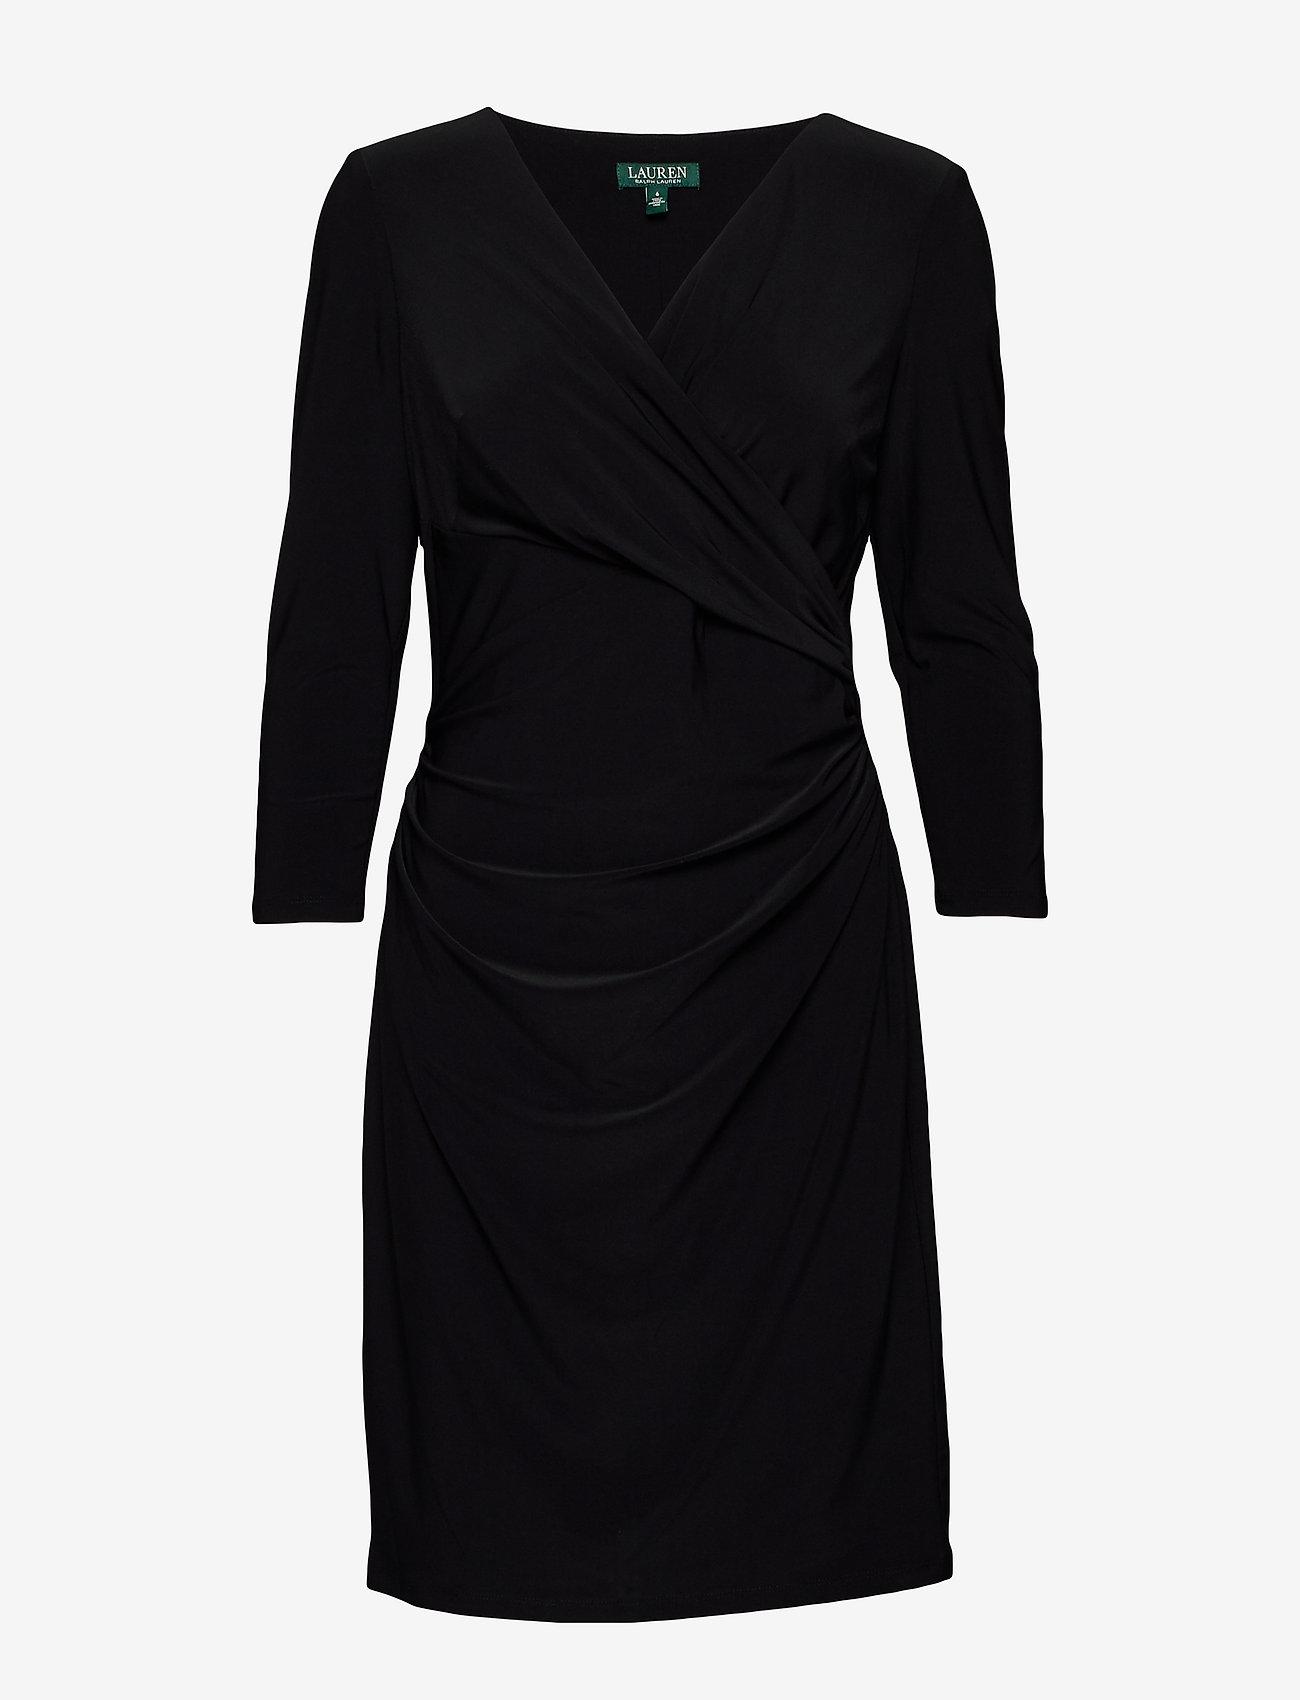 lauren black dress